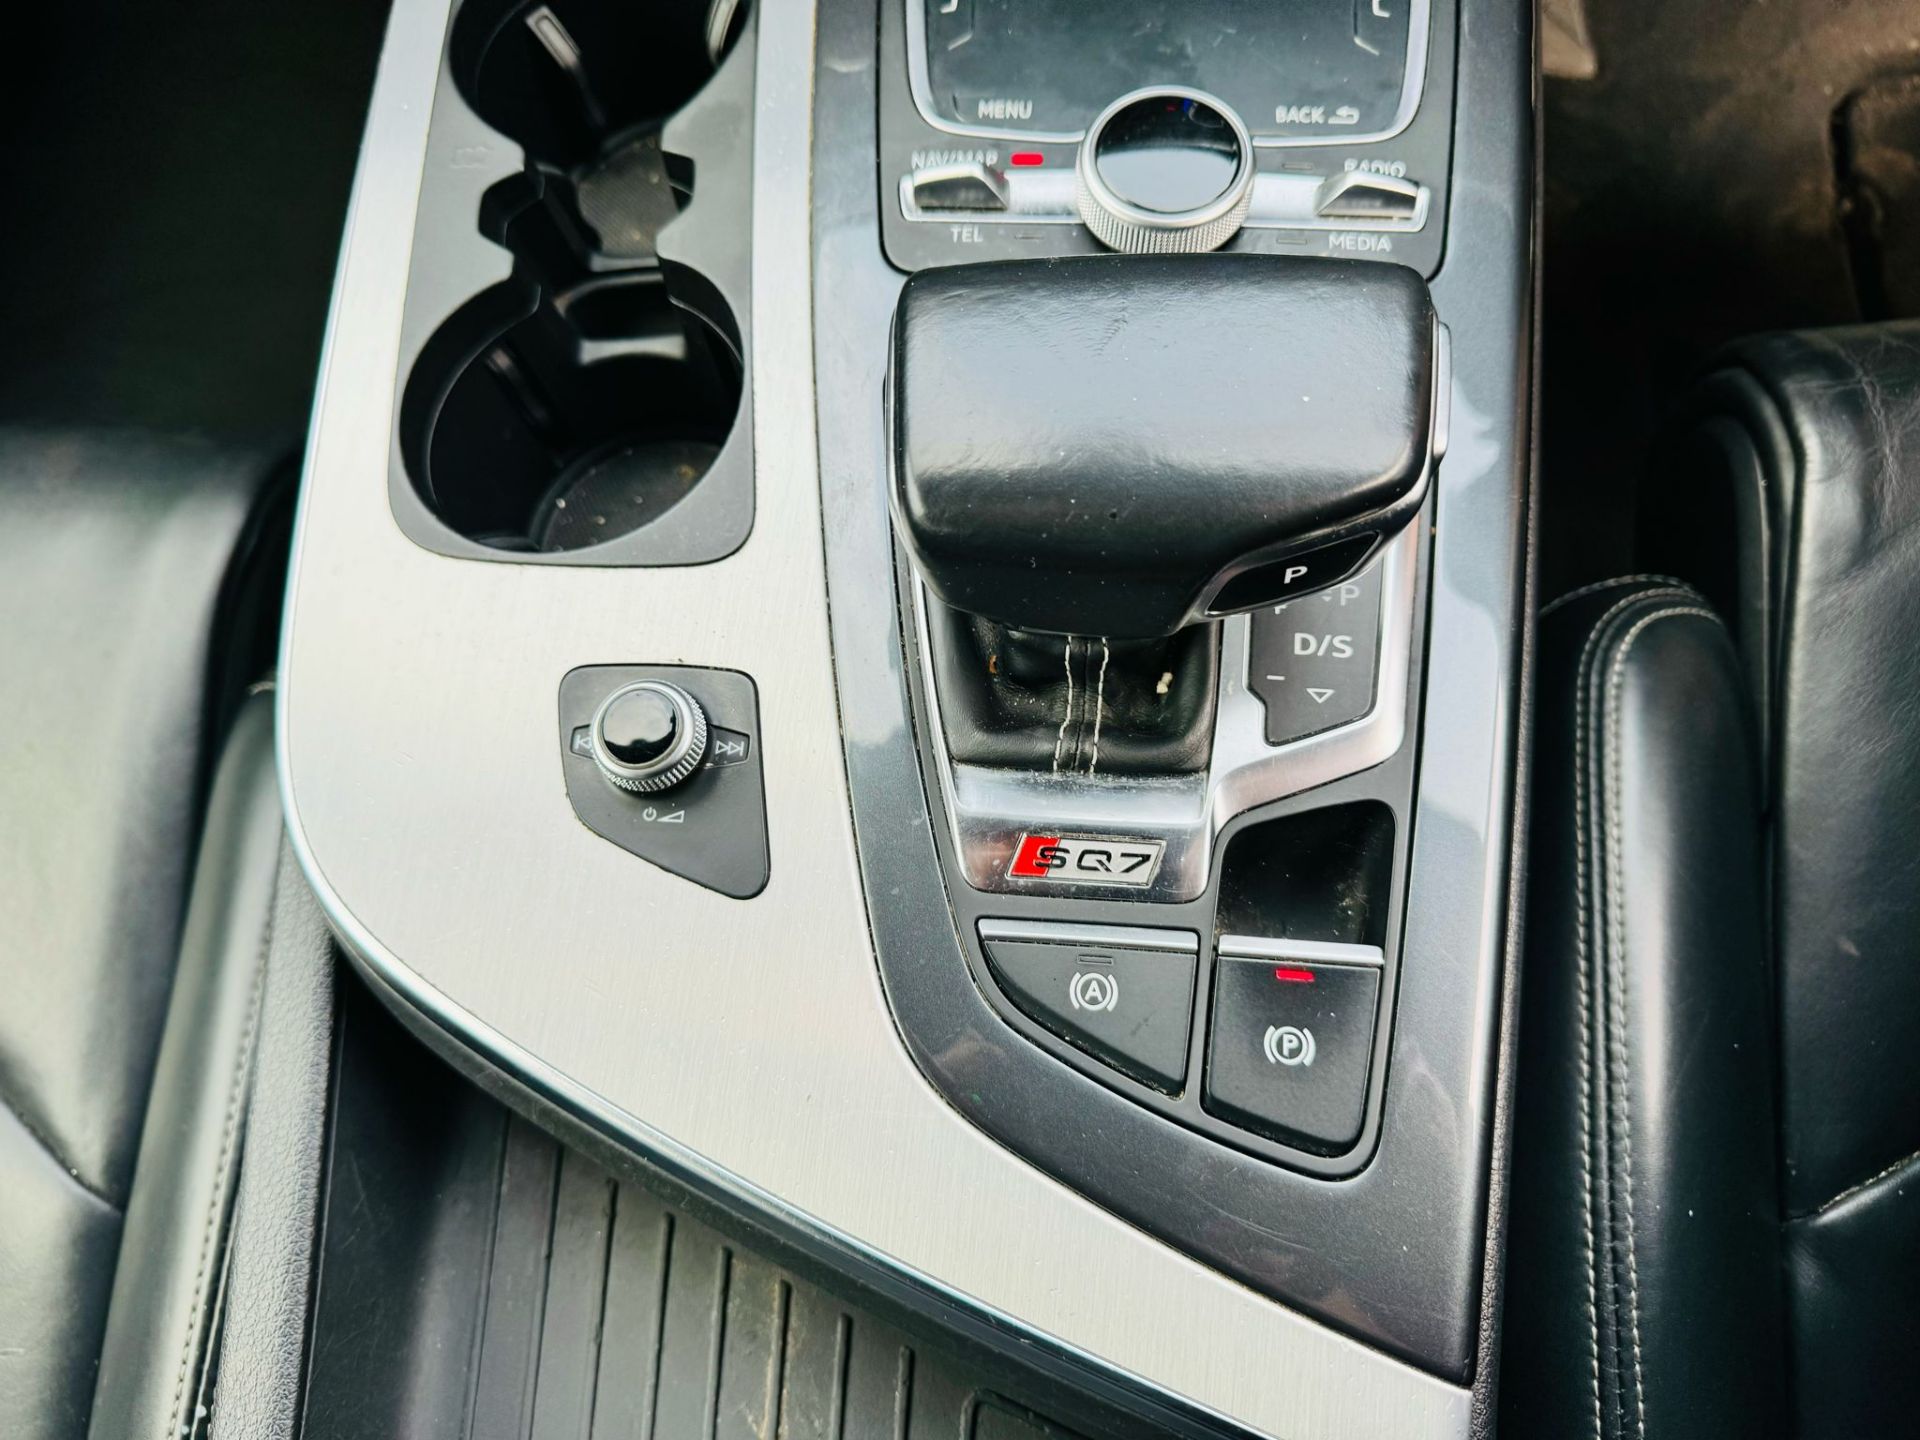 Audi SQ7 4.0TDI V8 Quattro 430BHP "SQ7 EDITION" Auto (7 Seats) 2018 18Reg -Sat Nav -Reversing camera - Image 23 of 38